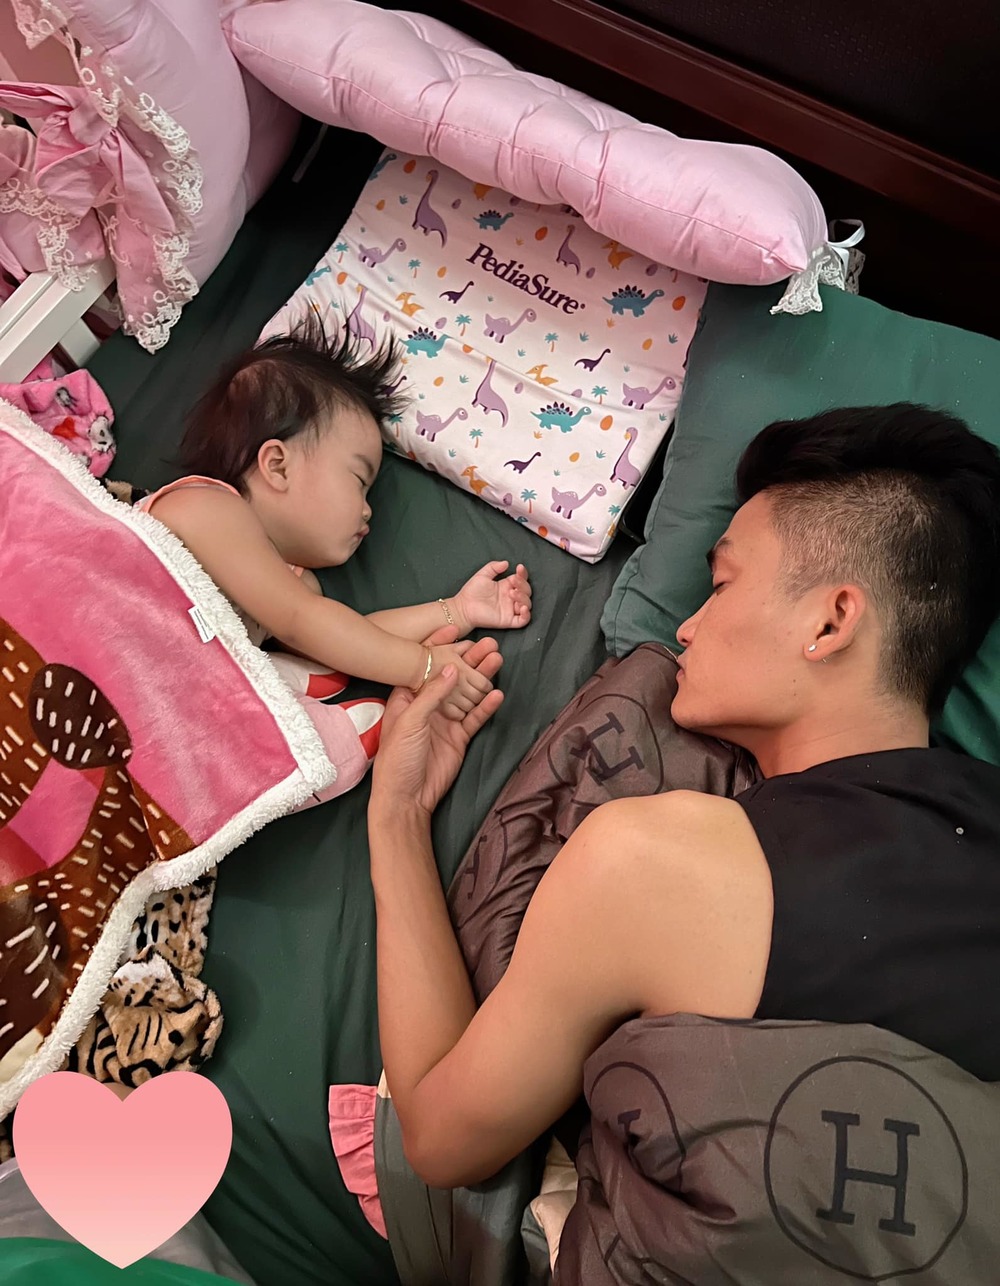 Một bức ảnh đầy tình cảm về Mạc Văn Khoa và con gái nhỏ, Minnie, trong giấc ngủ êm đềm. Chụp tại Candy Studio, bức ảnh này sẽ khiến bạn cảm thấy ấm áp và suy nghĩ đến những khoảnh khắc gia đình đầy tình yêu.